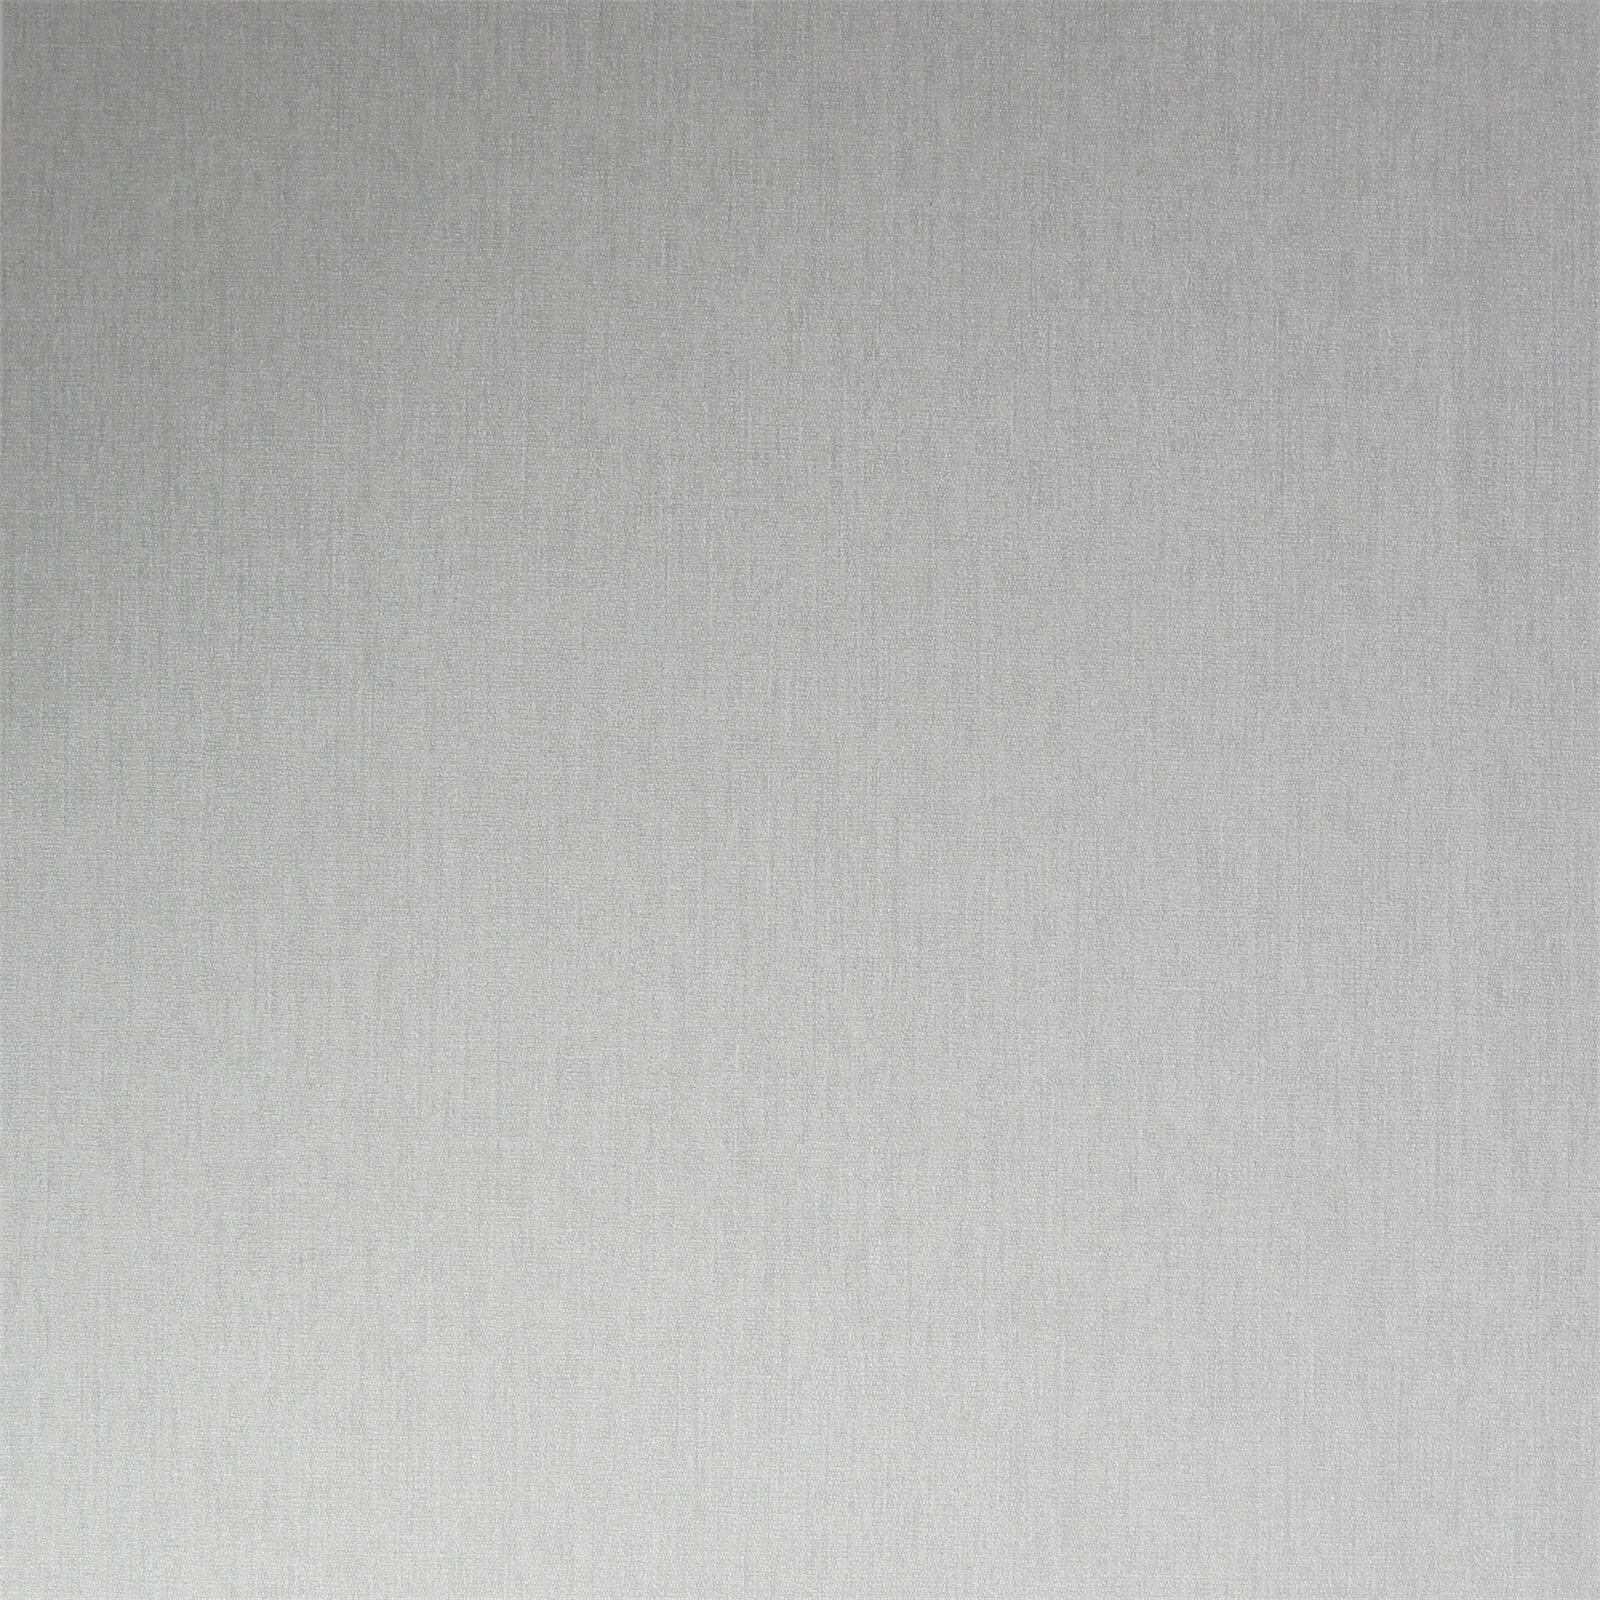 Superfresco Easy Plain Tany Grey Wallpaper